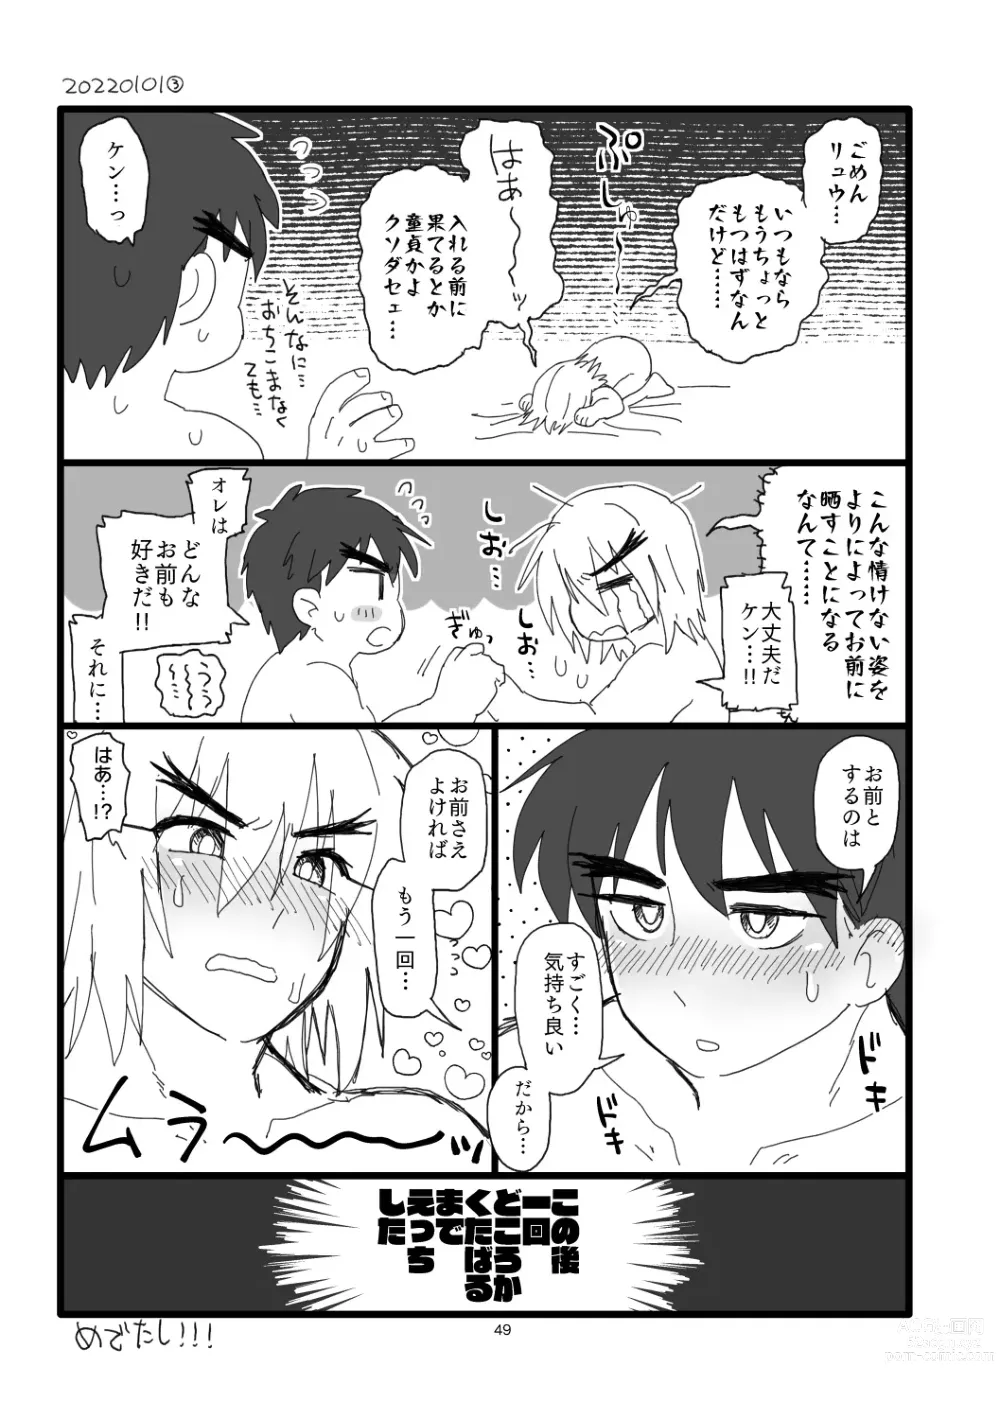 Page 48 of doujinshi Kobushi Kiss